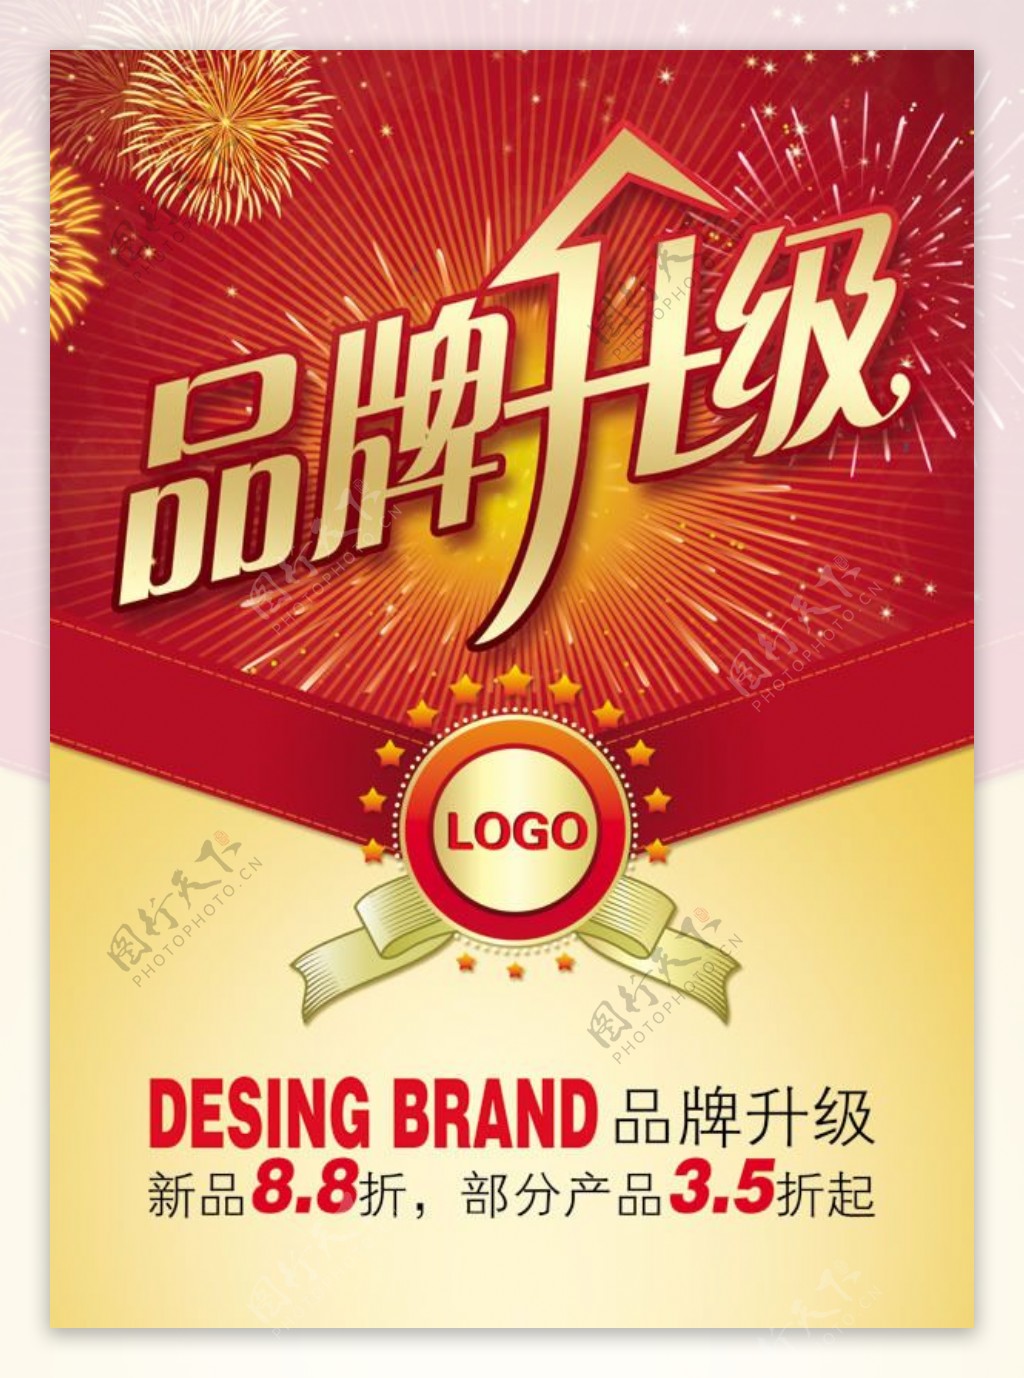 品牌升级dm宣传单设计psd素材